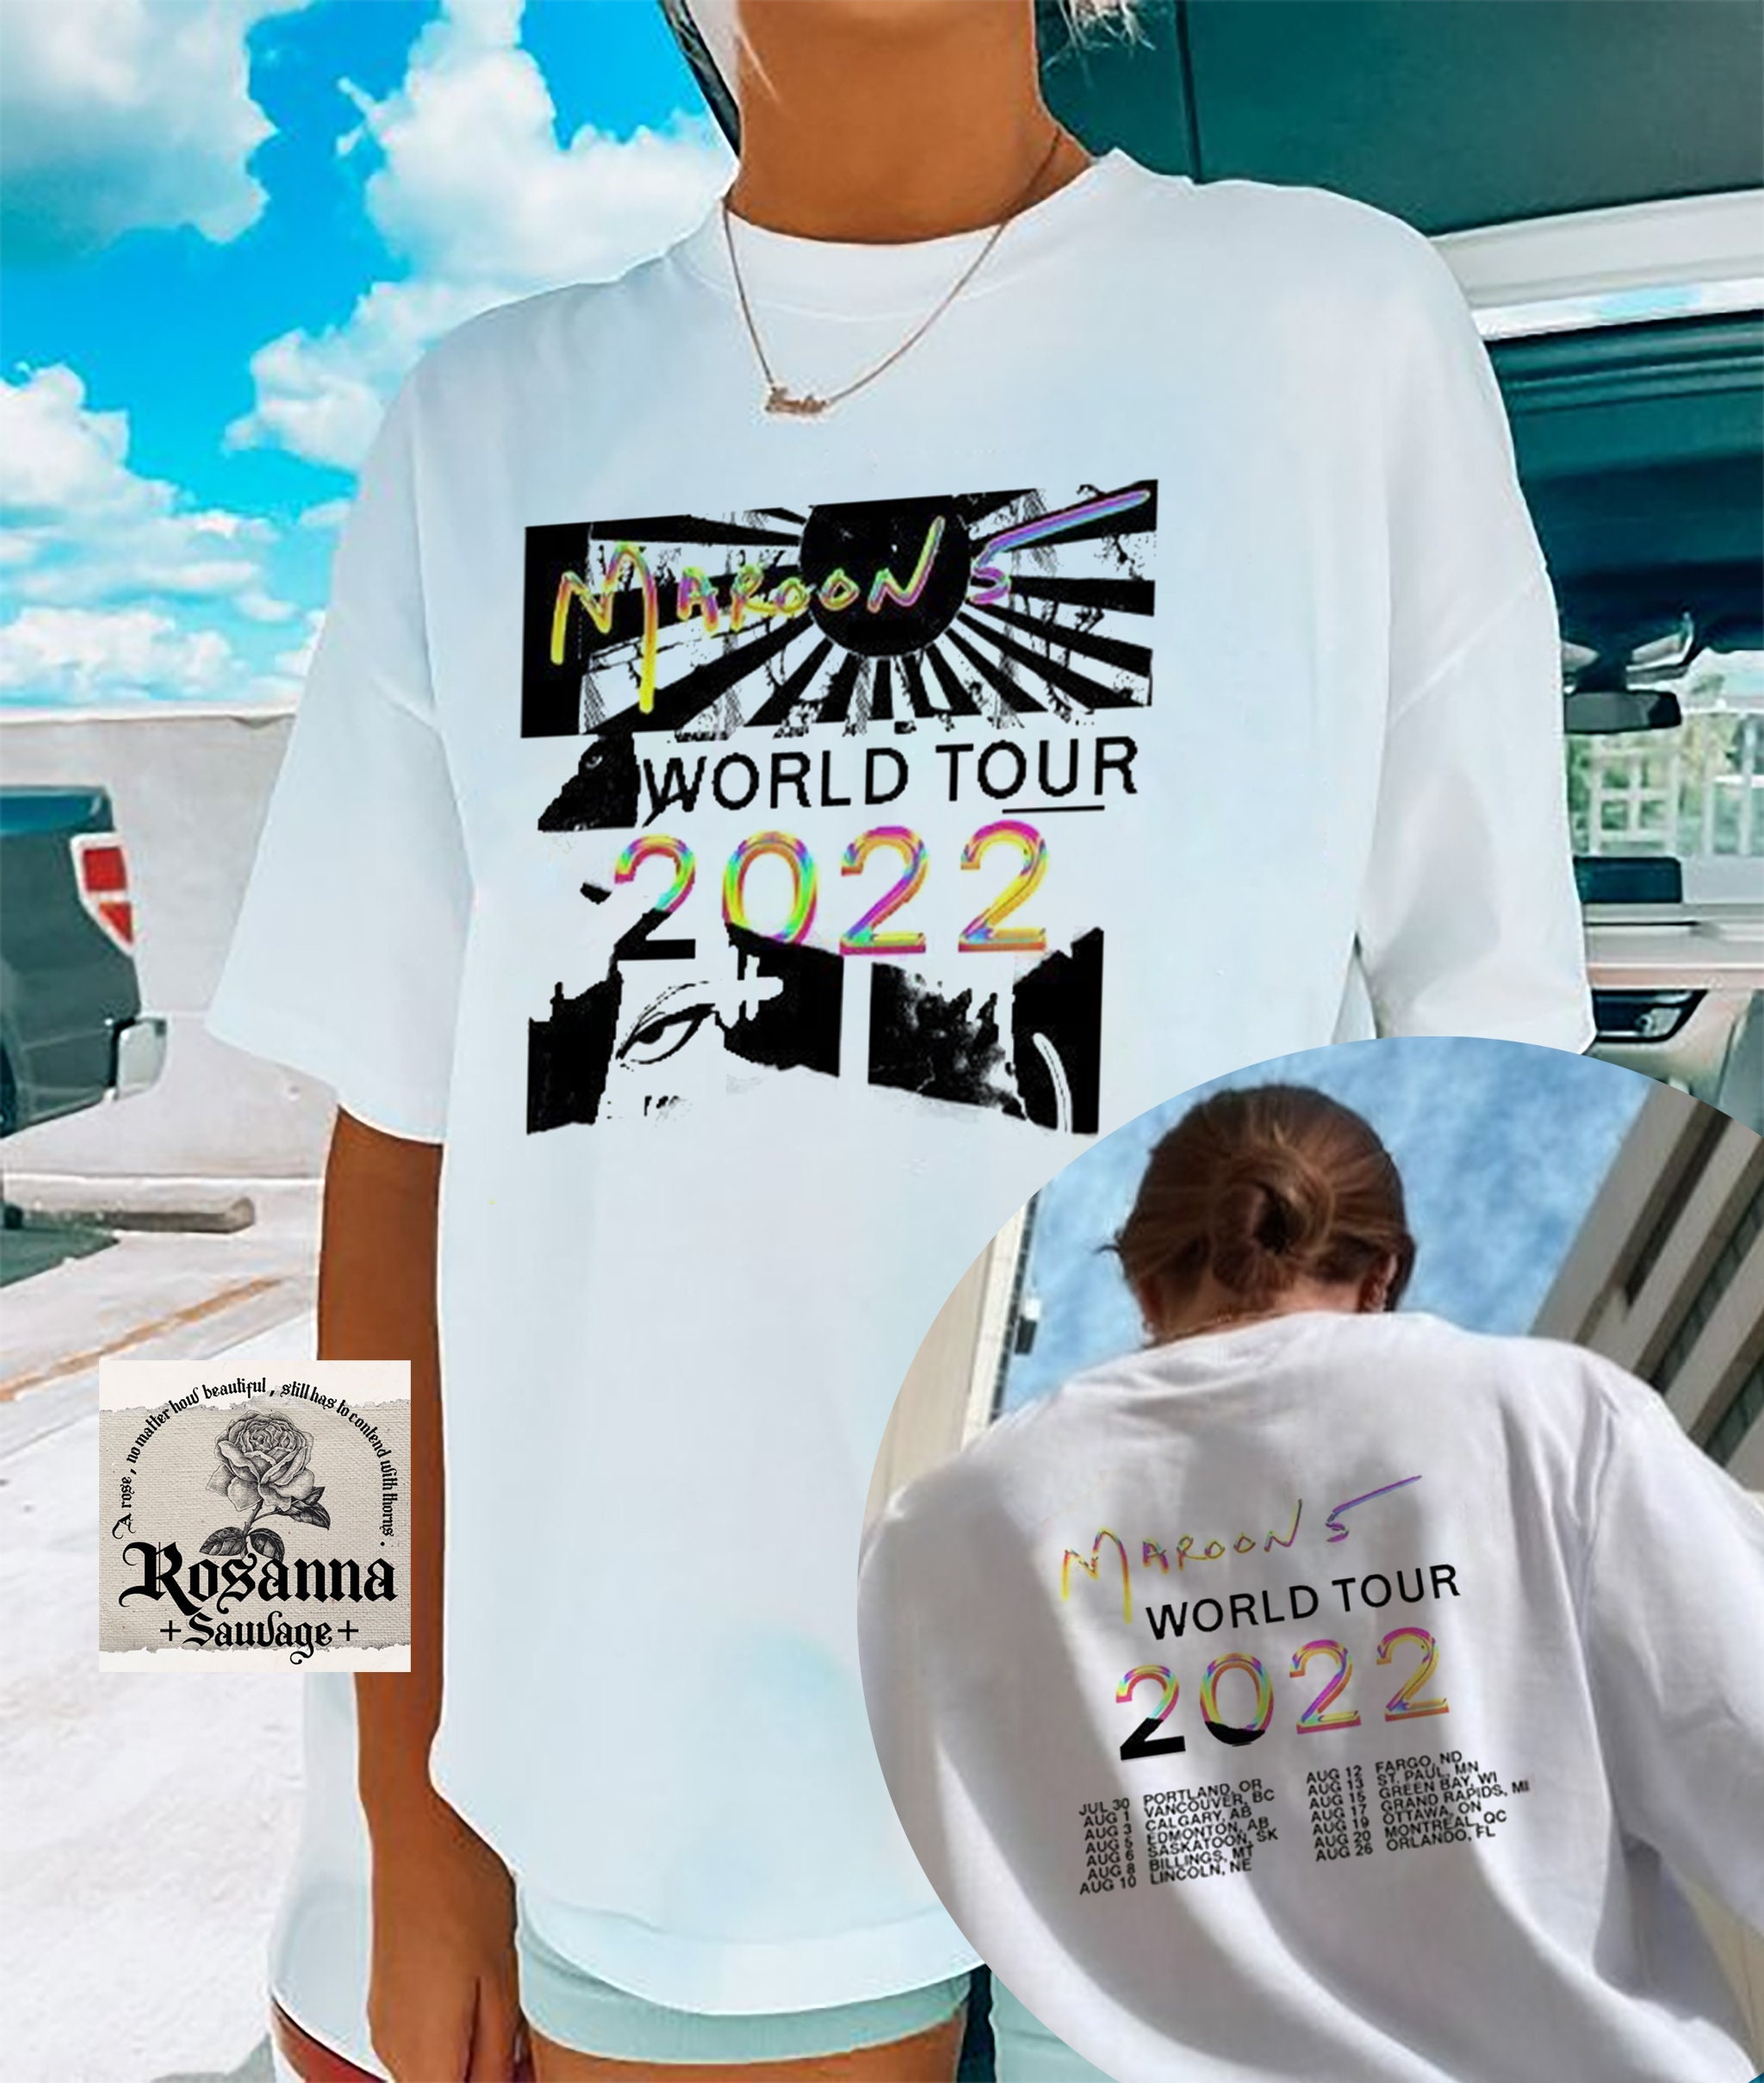 Maroon5 マルーン5 WORLD TOUR 2022 Tシャツ BLACK - タレント